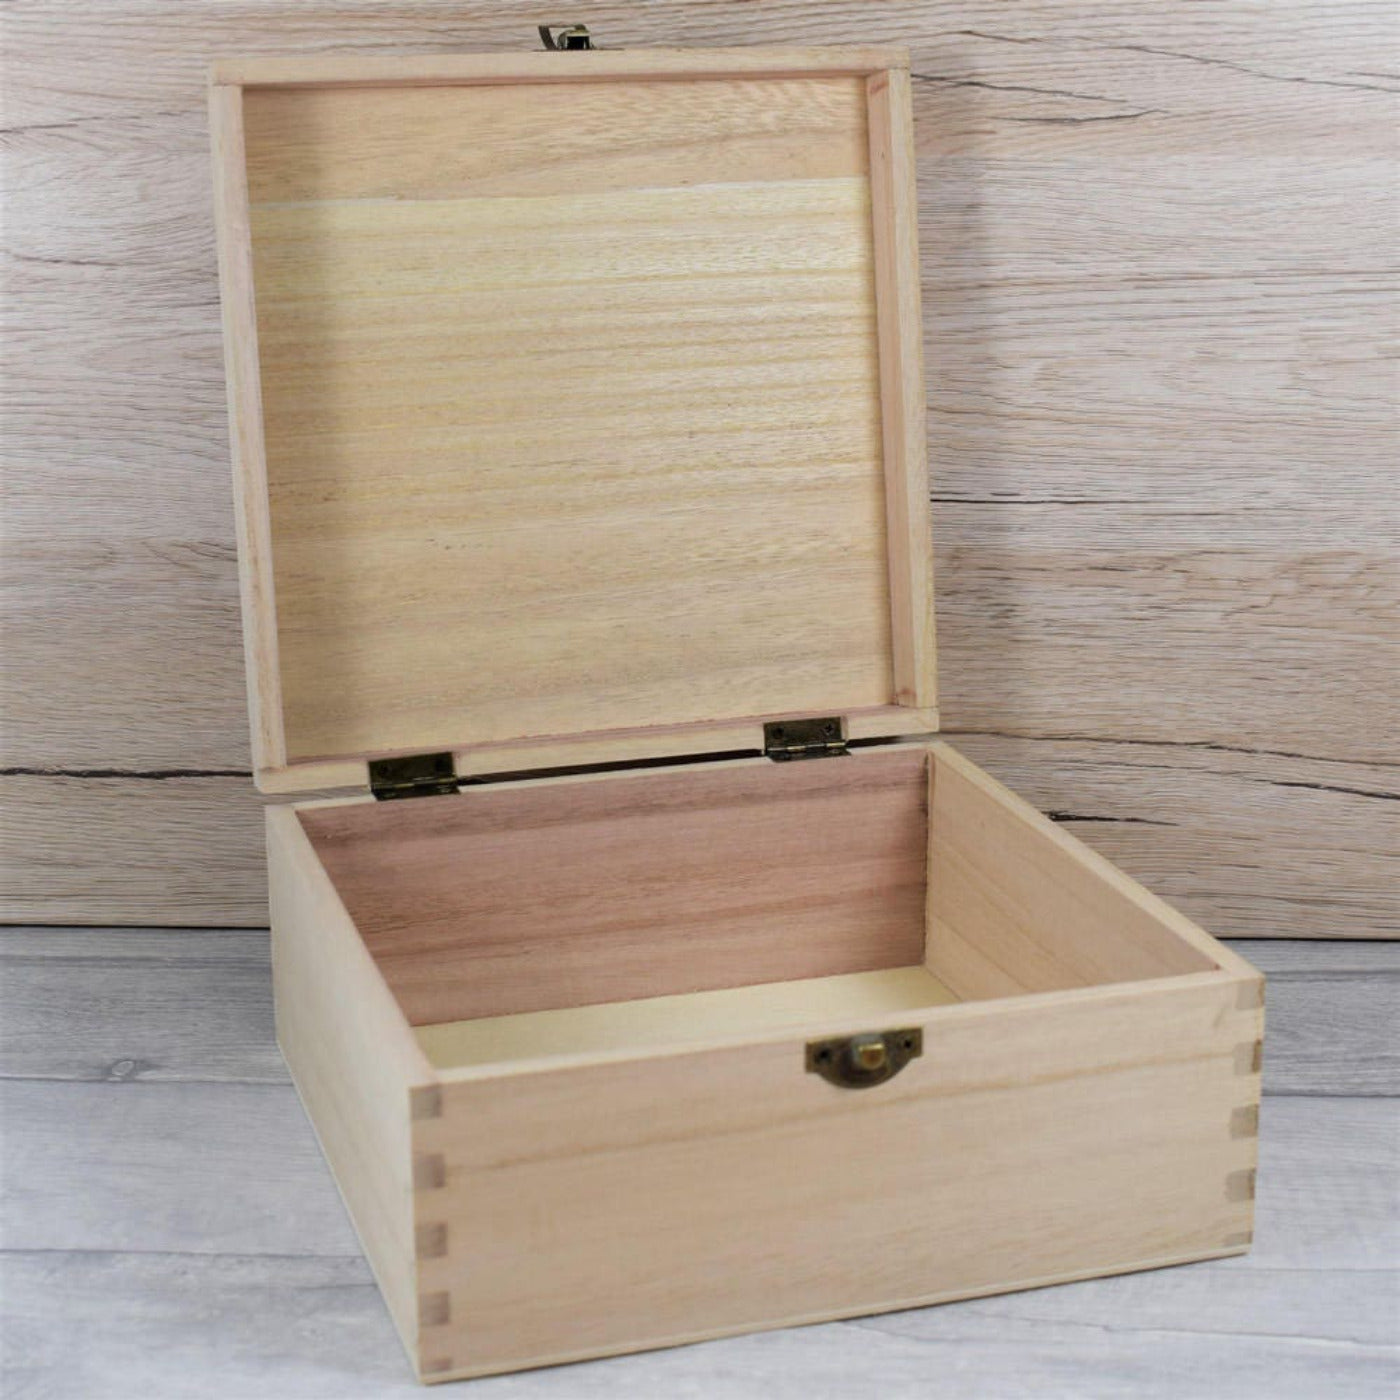 Personalised Printed Wooden Keepsake Box - The Adventures Of...